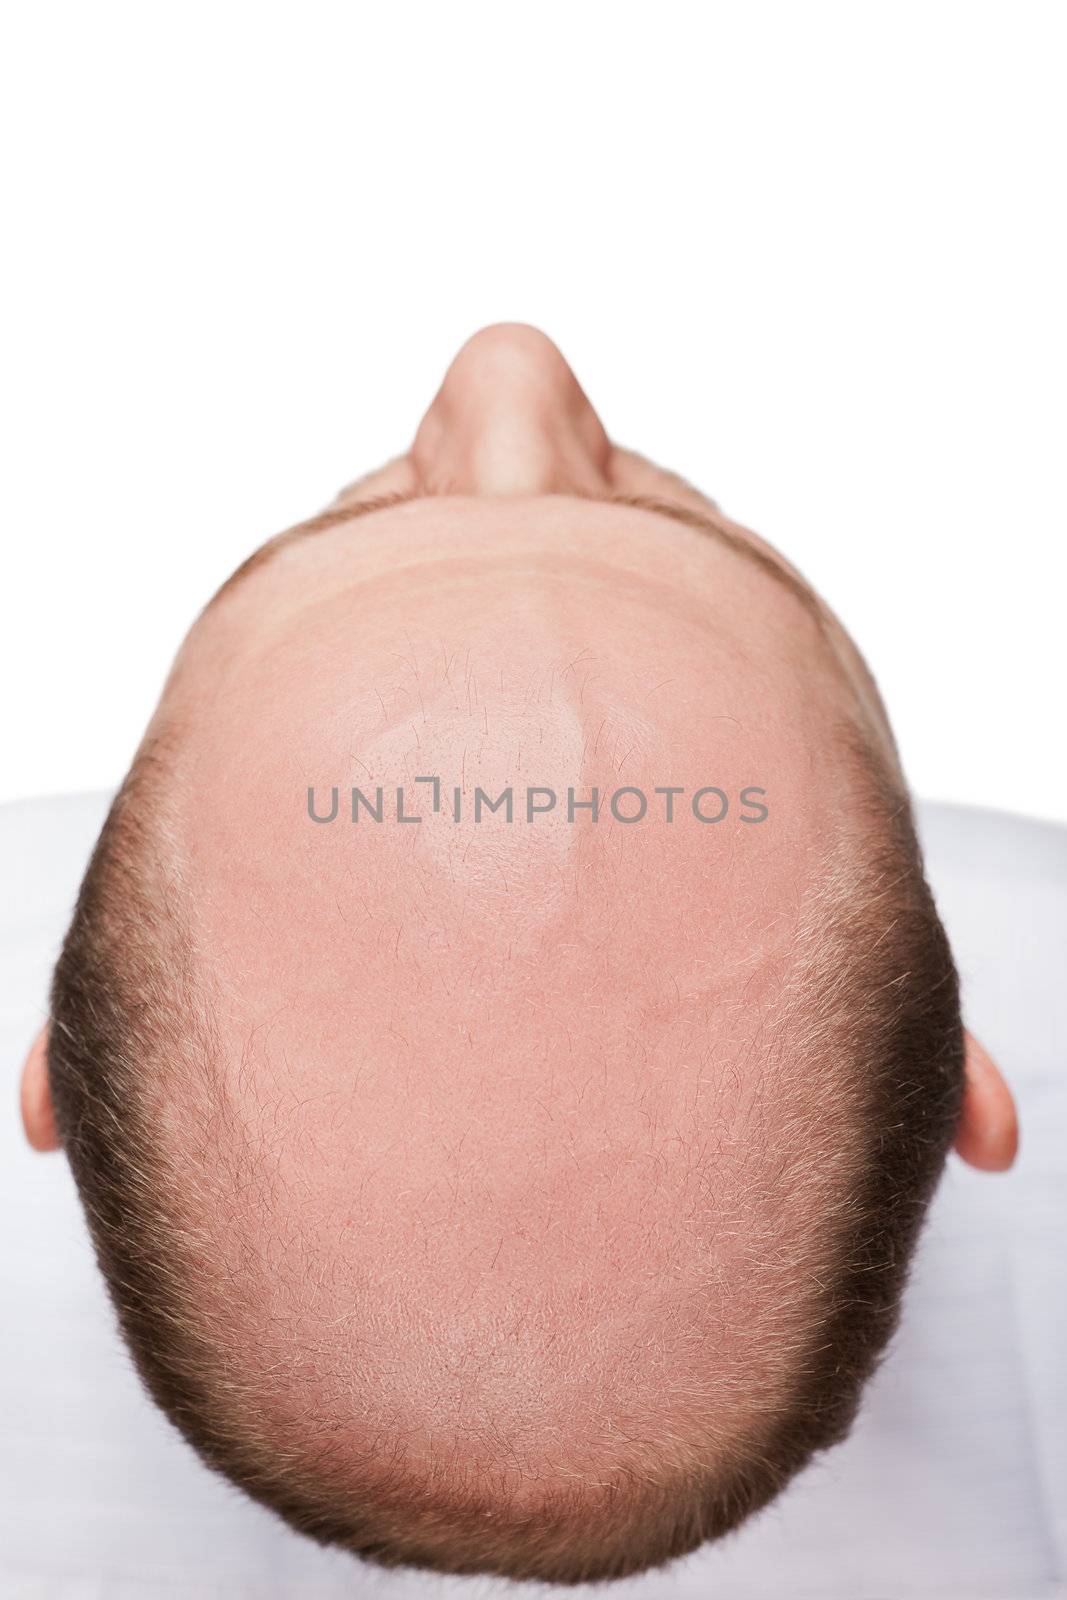 Human alopecia or hair loss - adult man bald head top view